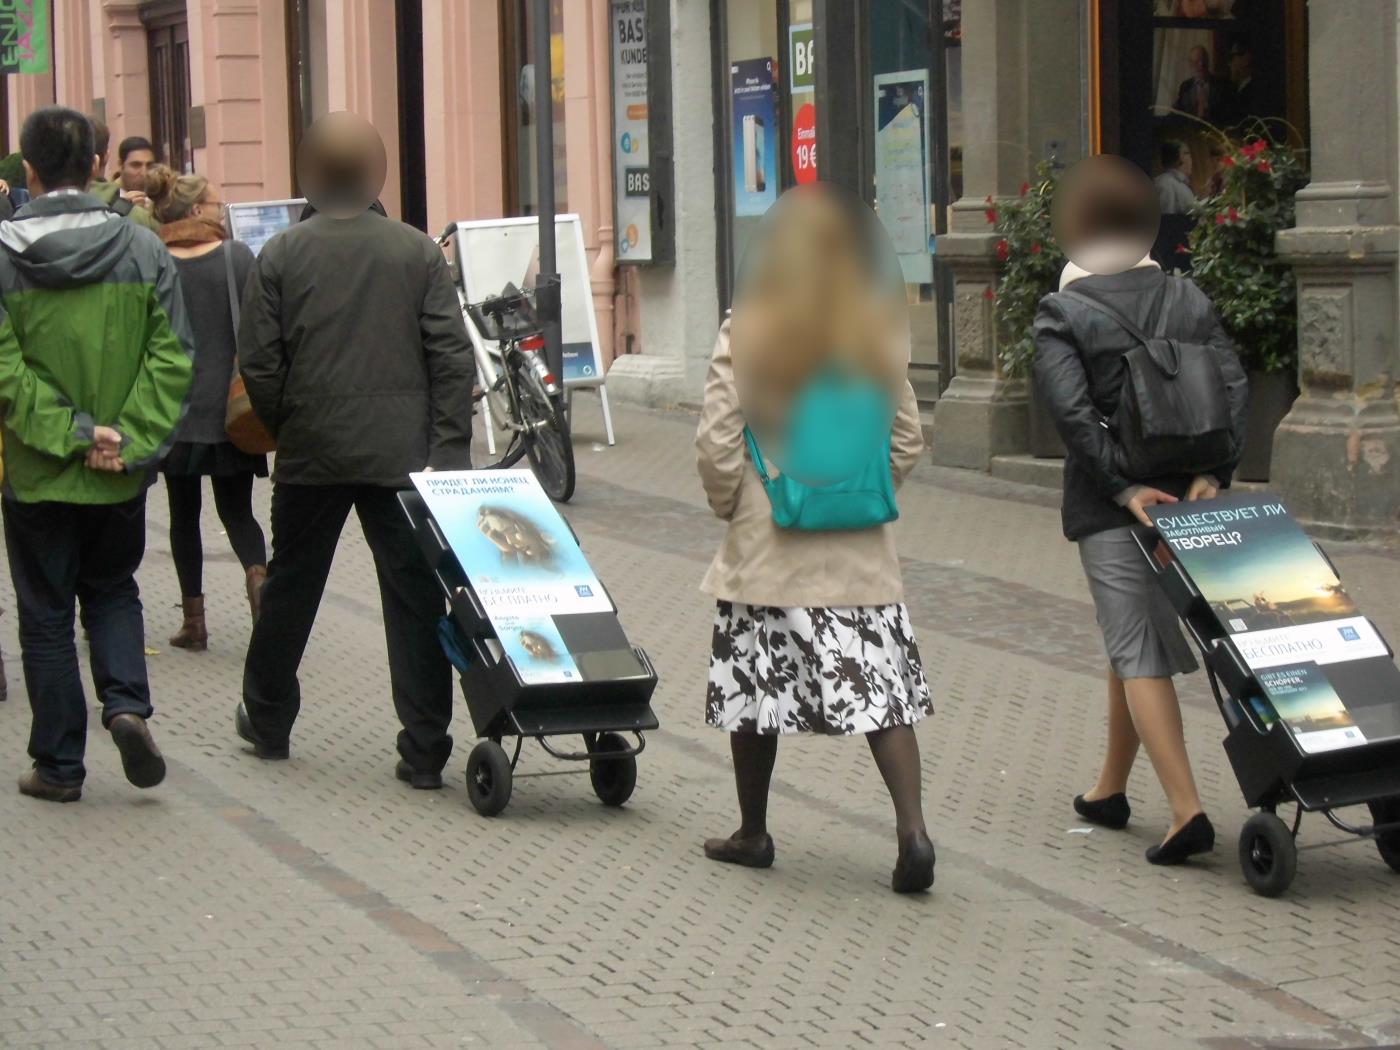 Heidelberg: Jehovas Zeugen Verblutungsprozession